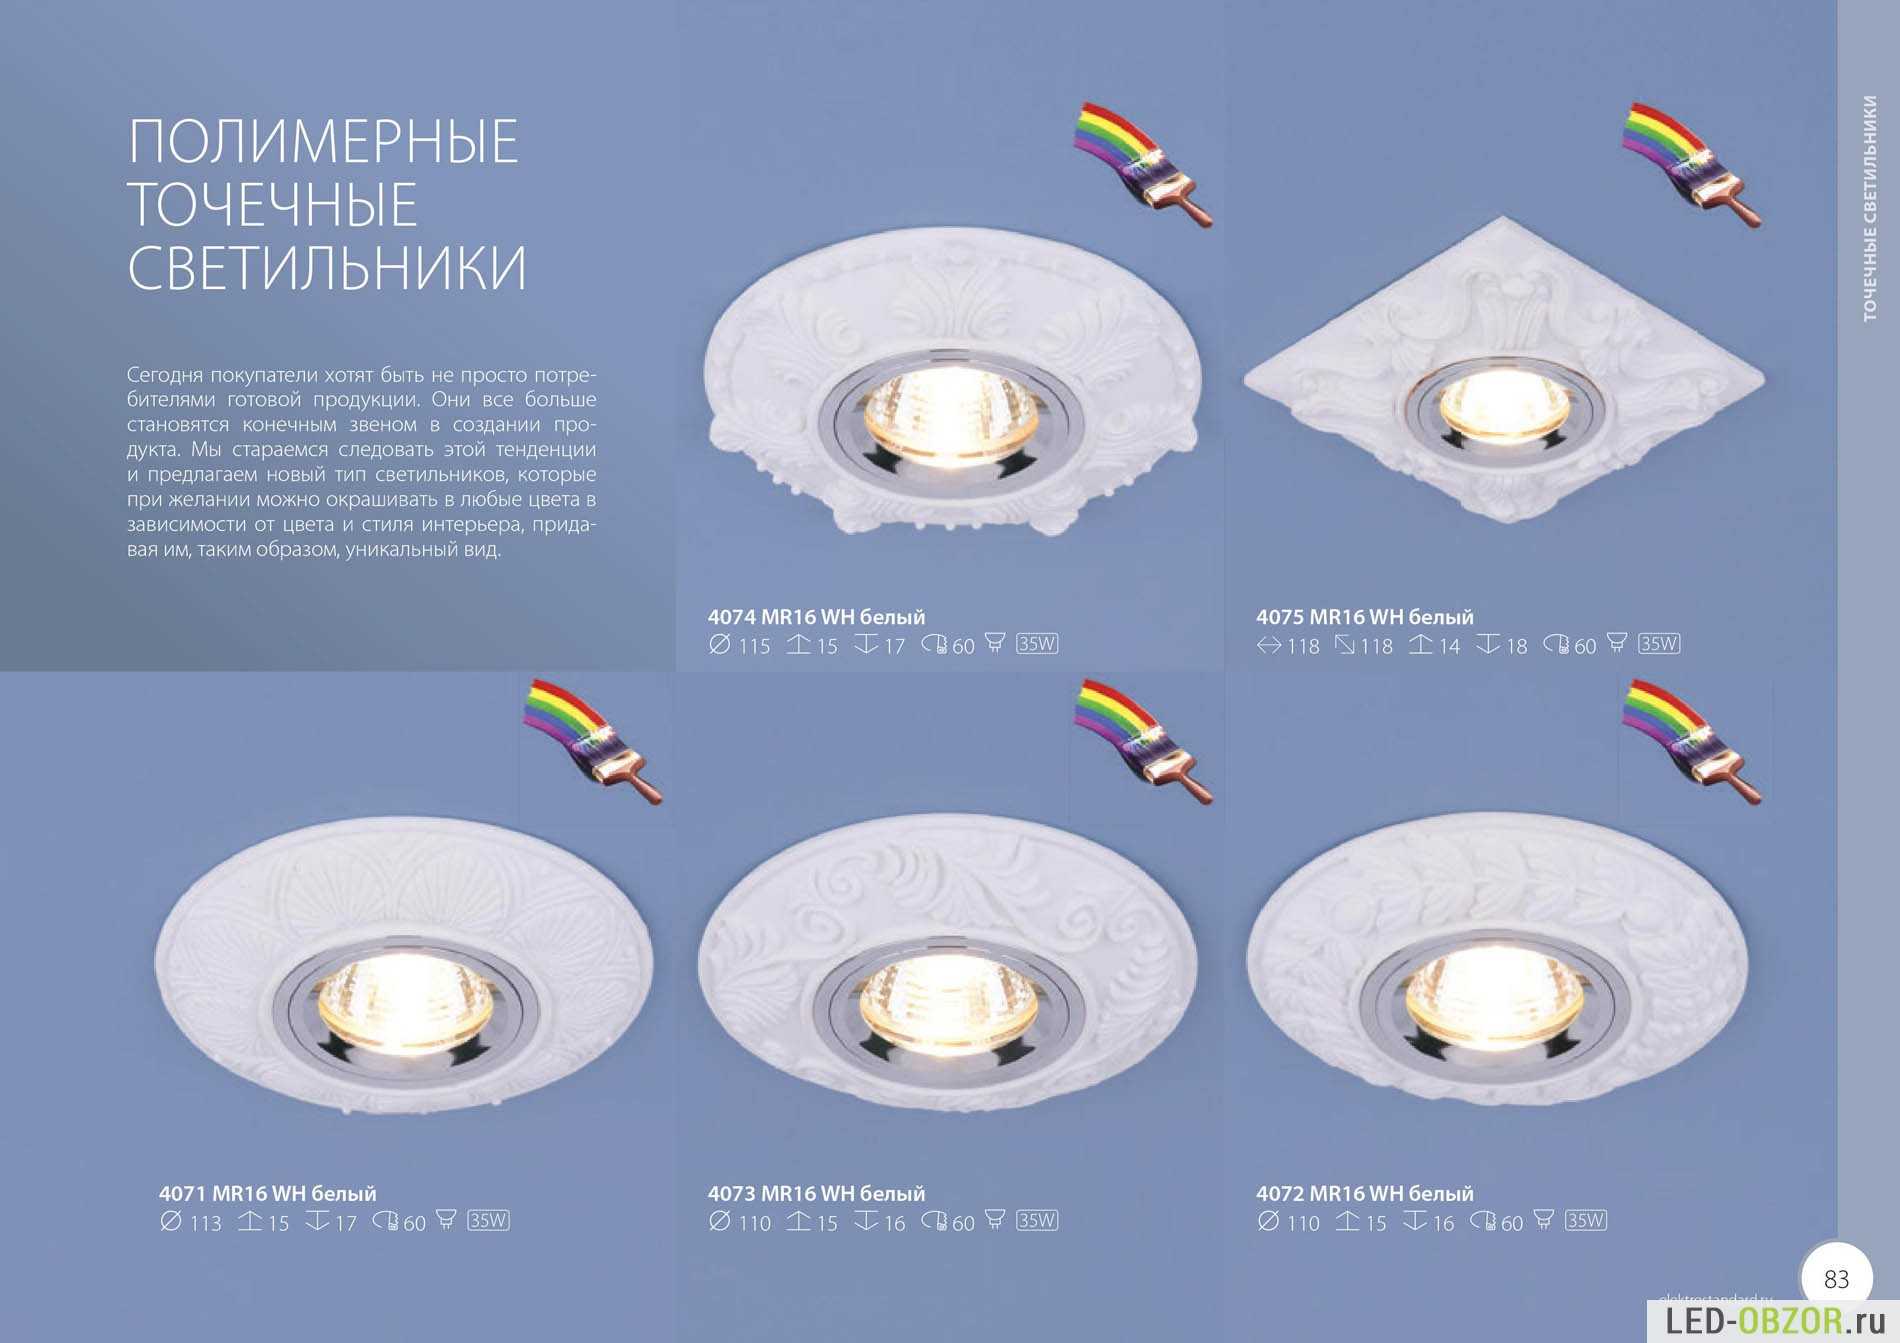 Какие светильники выбрать для натяжных потолков: виды, отличия, цены, что лучше?